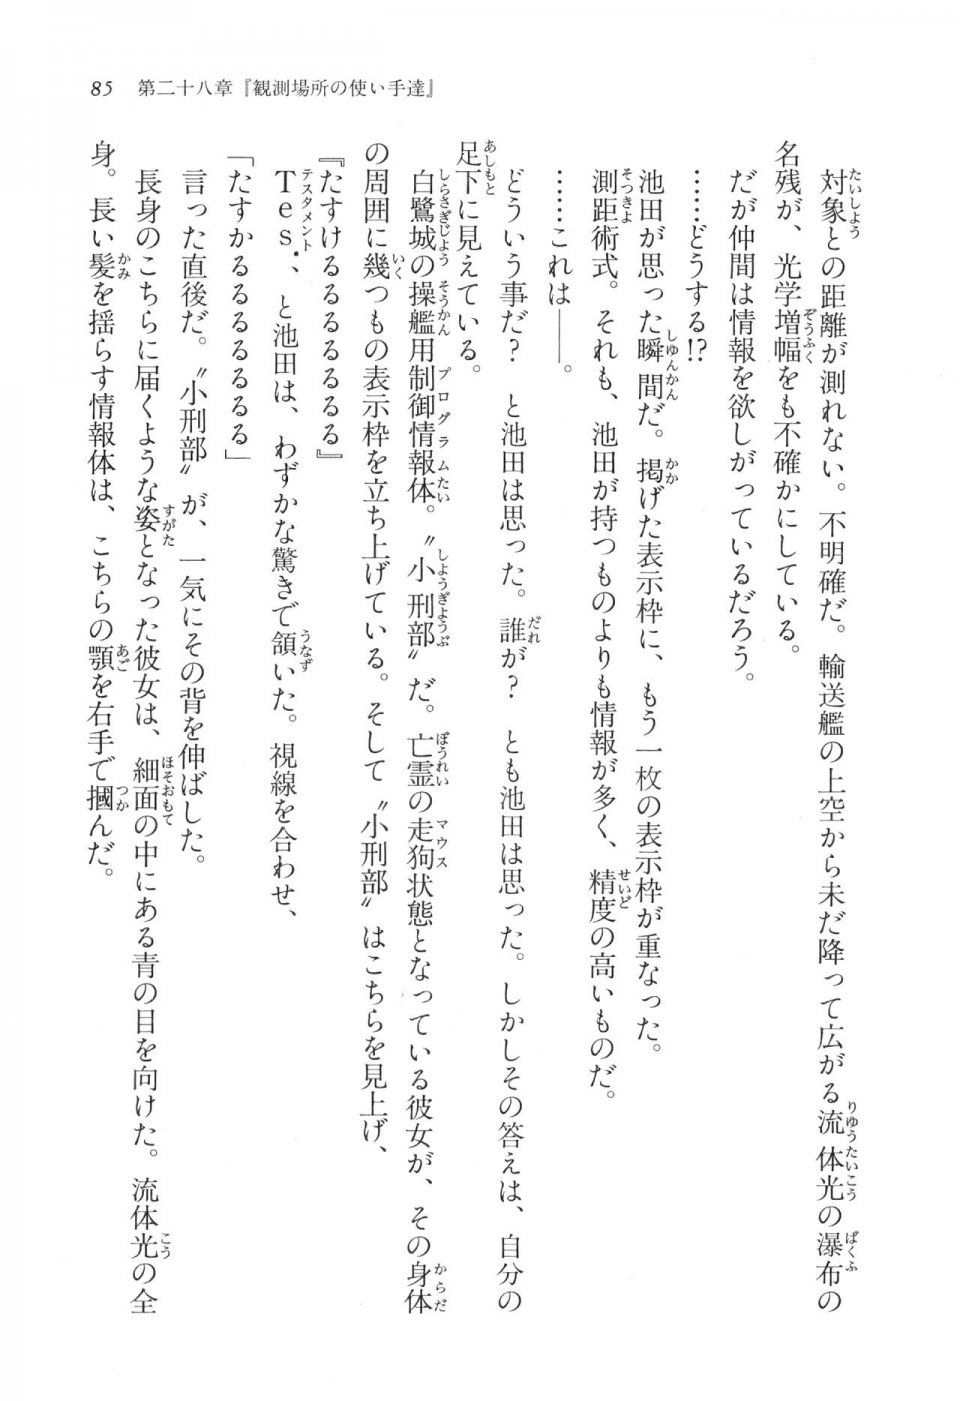 Kyoukai Senjou no Horizon LN Vol 17(7B) - Photo #85